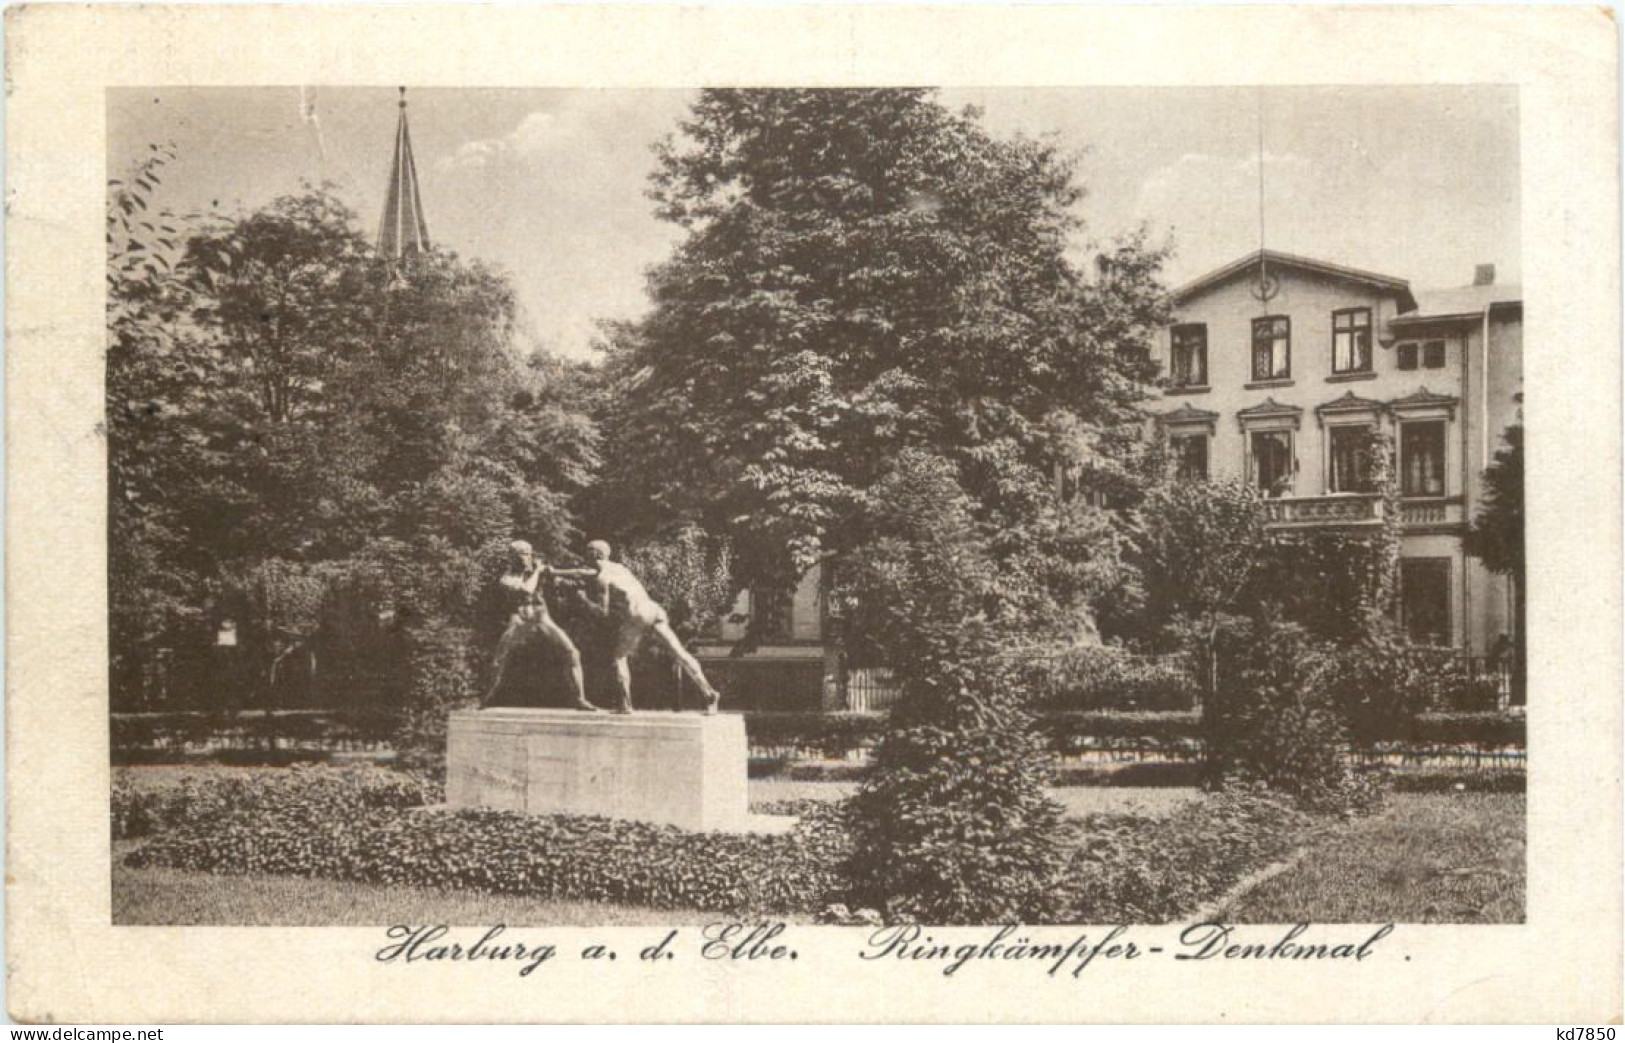 Harburg - Ringkämpfer Denkmal - Harburg